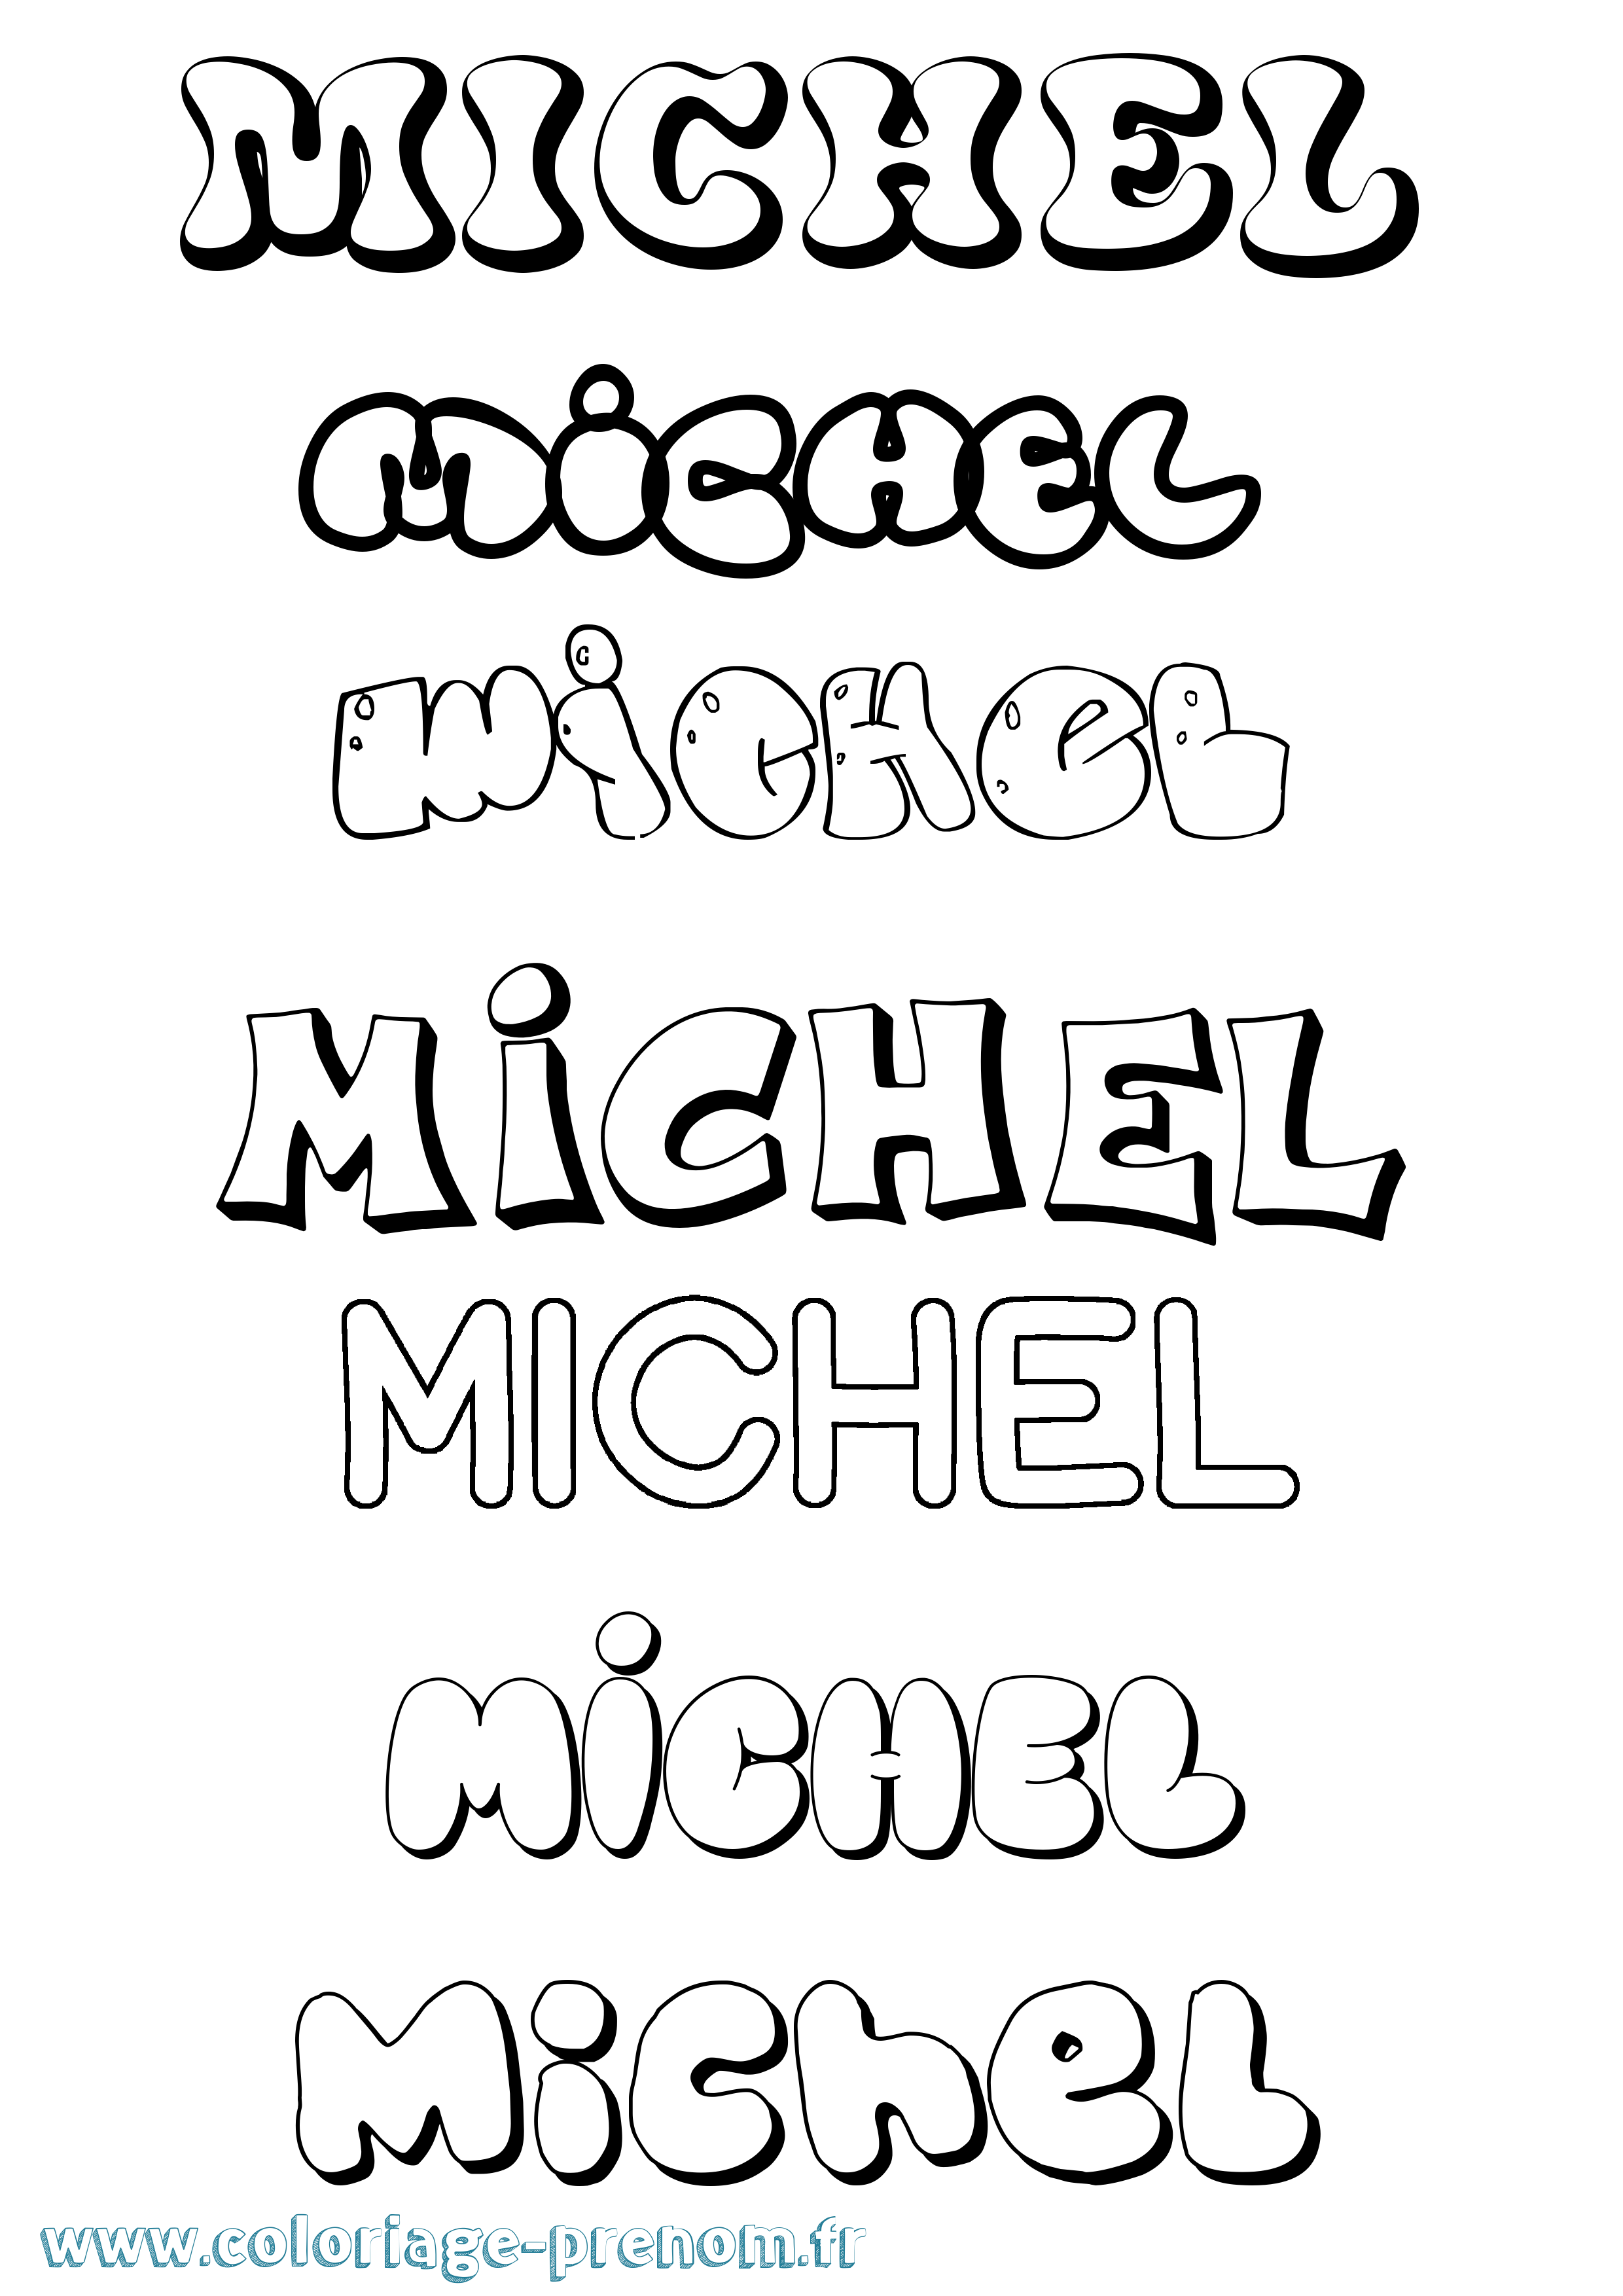 Coloriage prénom Michel Bubble